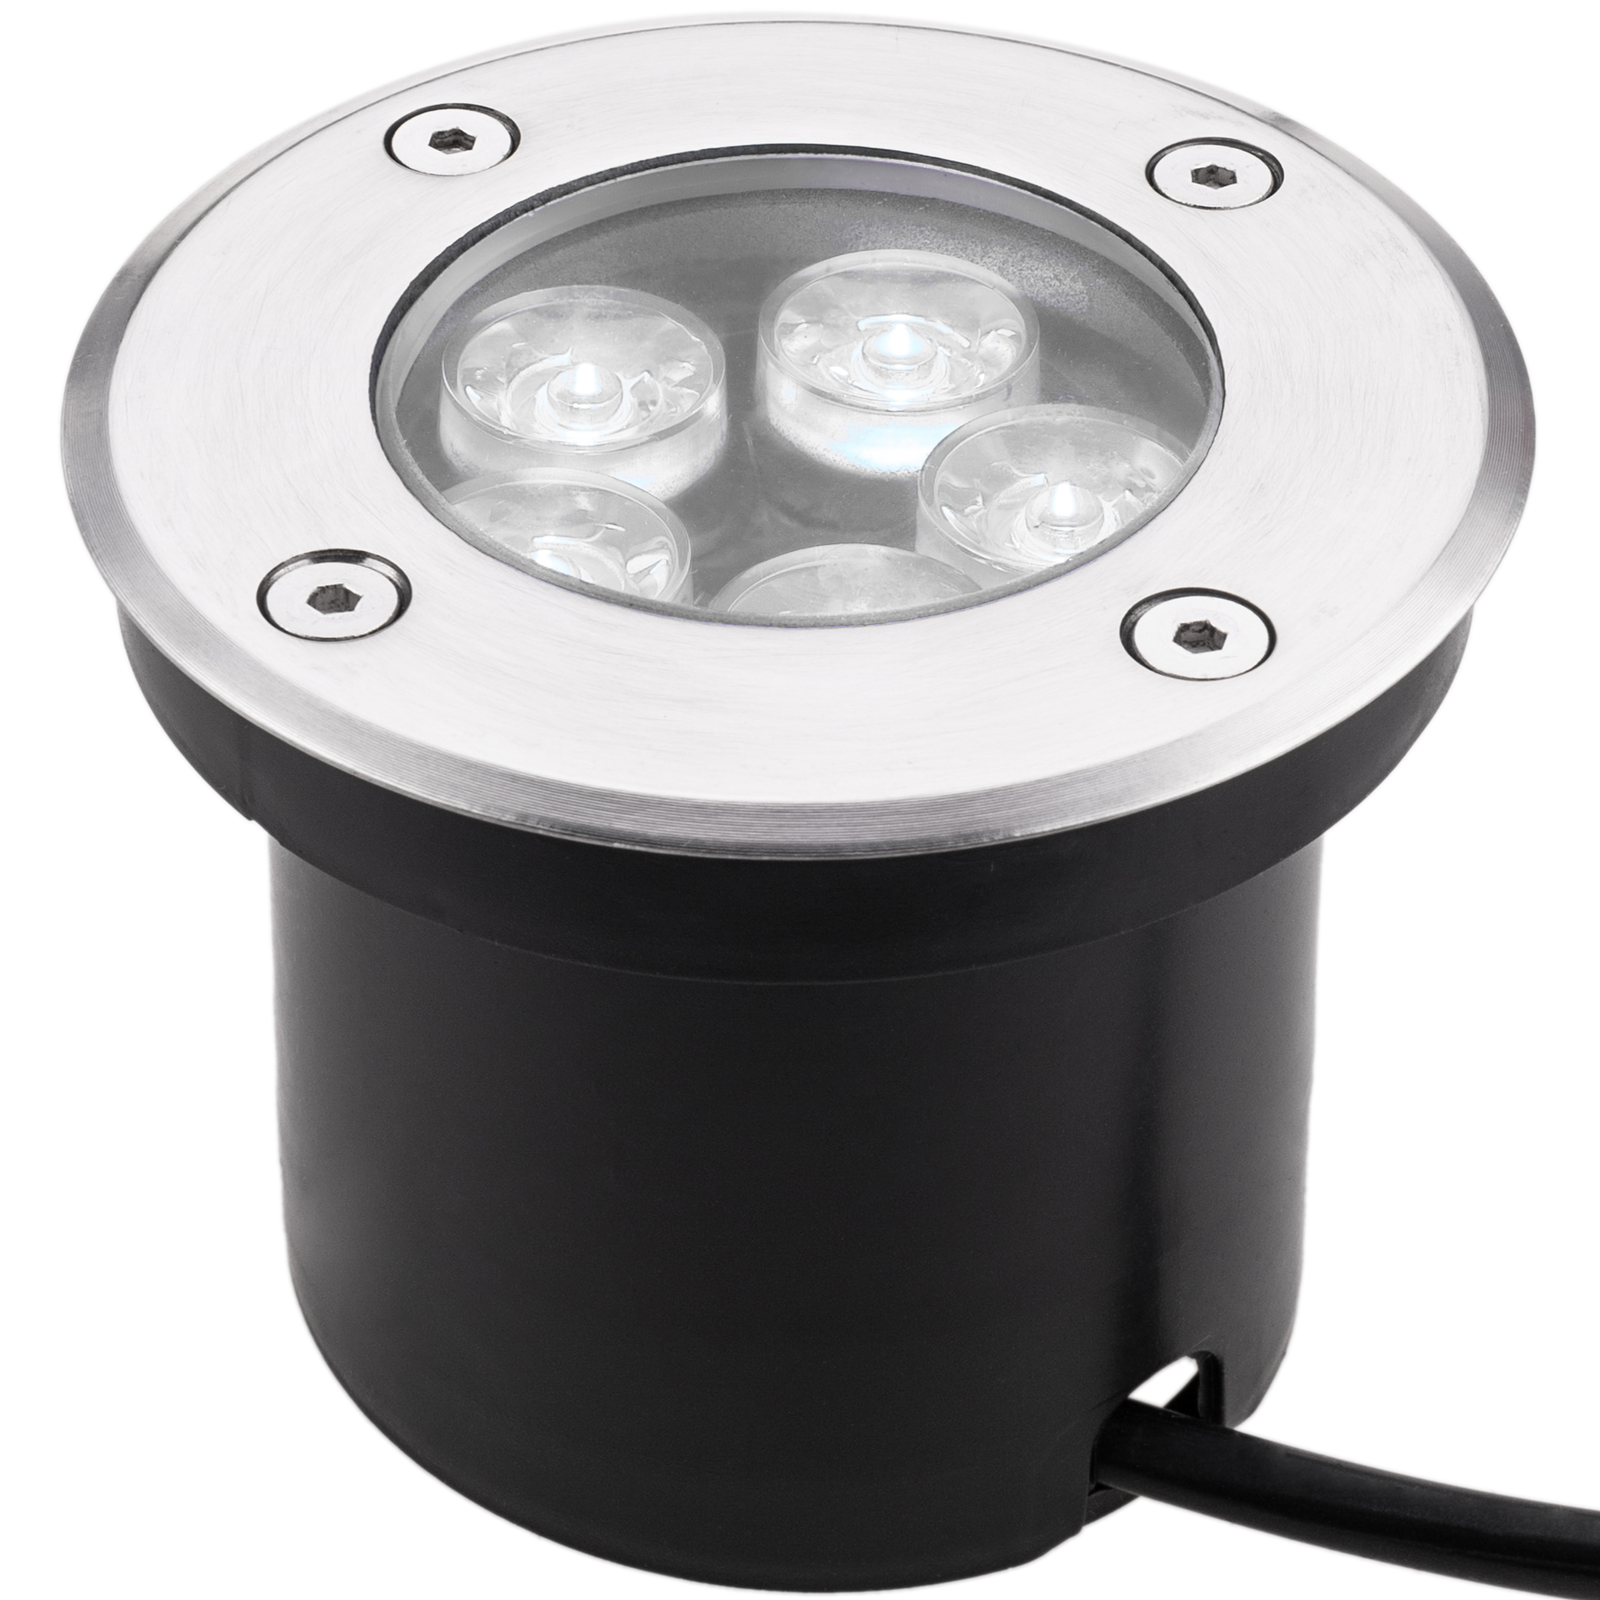 Aplique LED espejos de baños 5W Negro con fijación pinza o tornillos